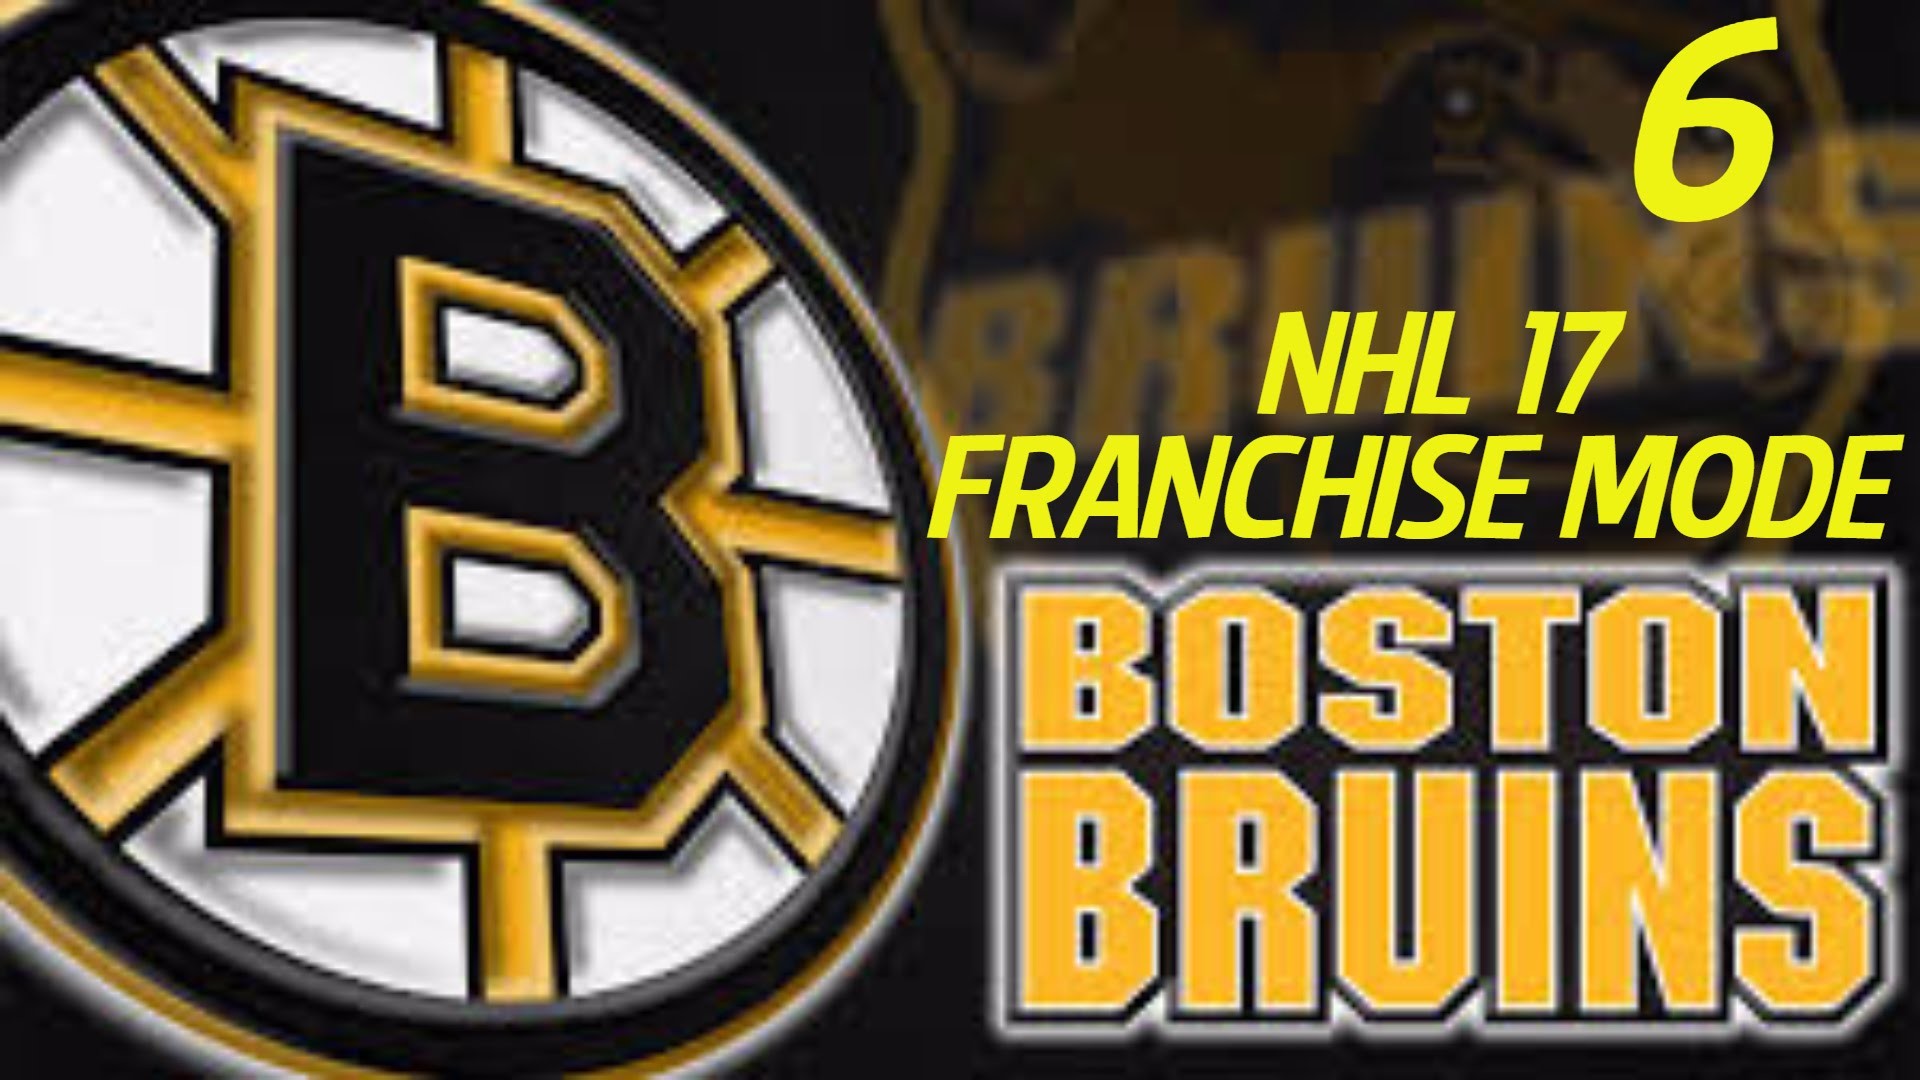 1920x1080 NHL 17 Franchise Mode: Boston Bruins S1 Episode 6 // Crashing (XBone) -  YouTube